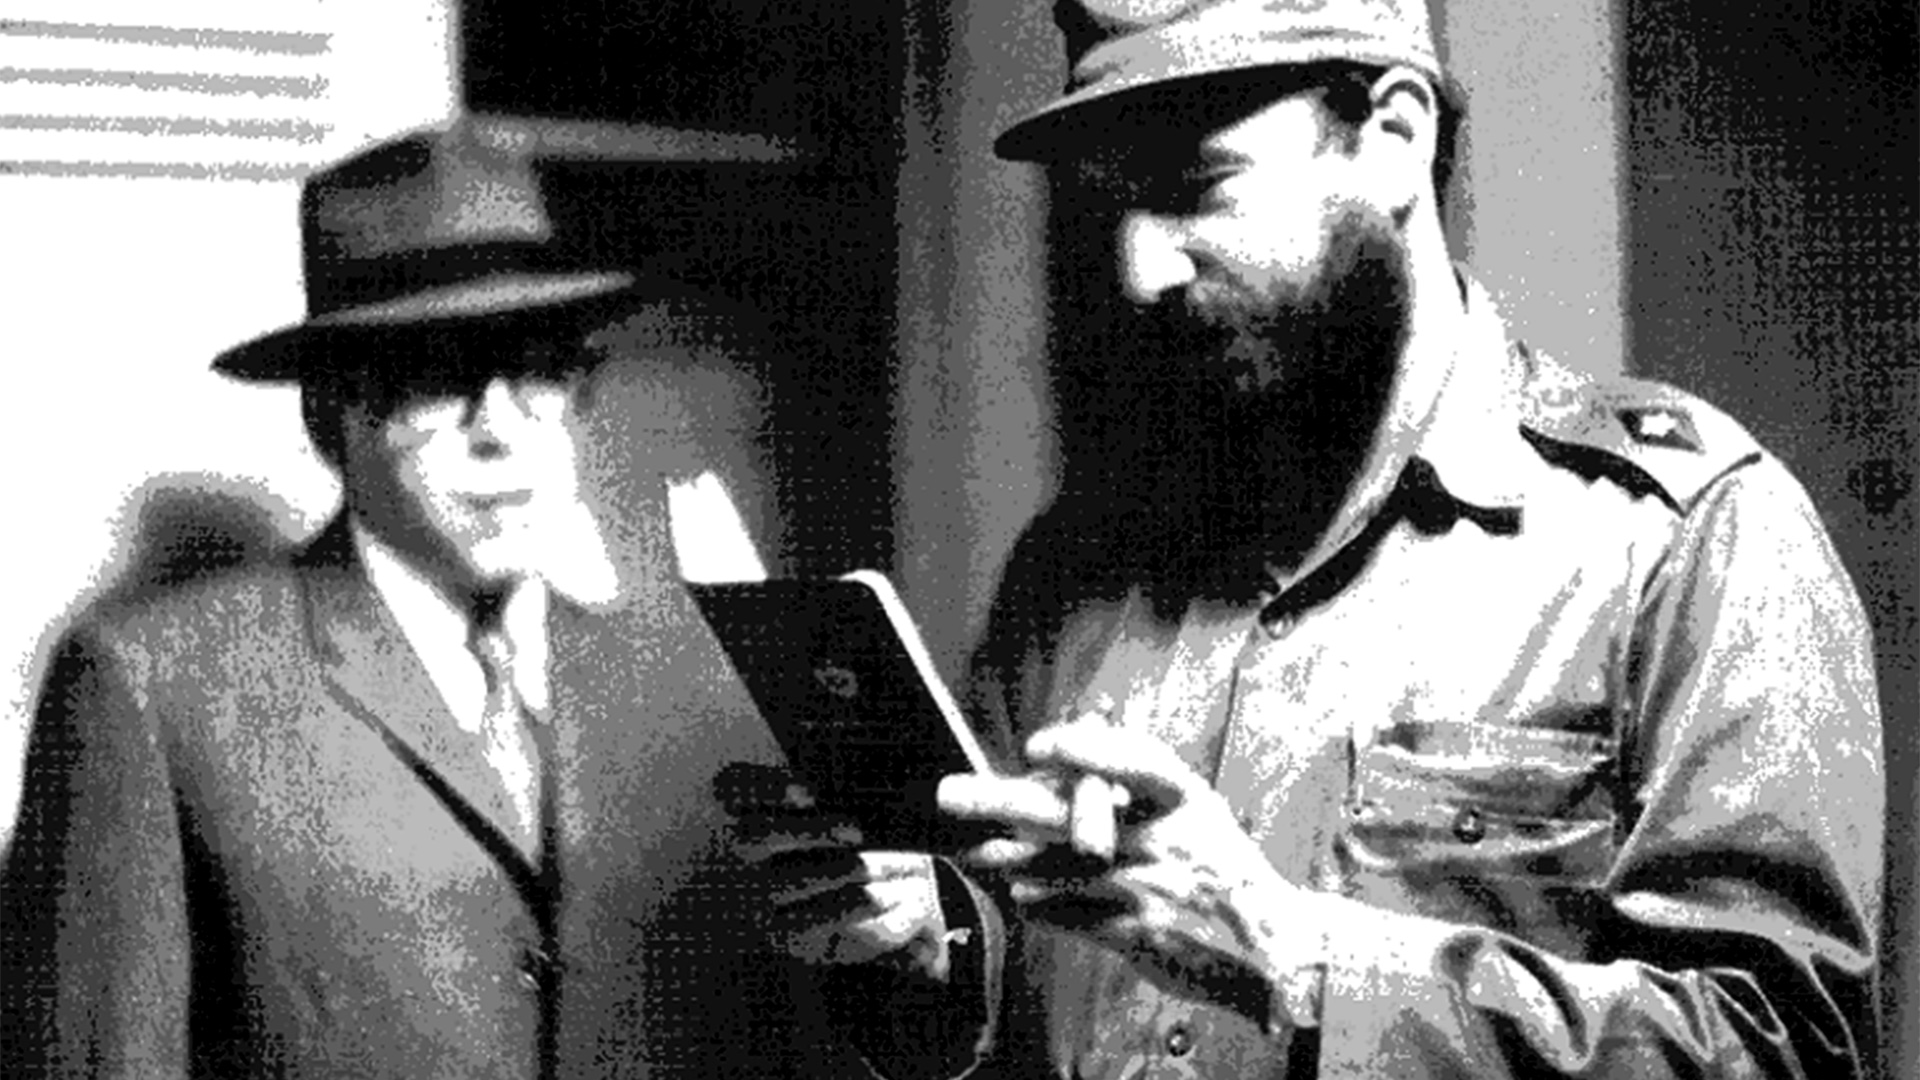 Foto tomada a fines de marzo de 1965 en una casa de seguridad de La Habana. Fidel Castro observa el pasaporte falso del Che, caracterizado como el comerciante uruguayo Ramón Benítez antes de viajar a Bolivia